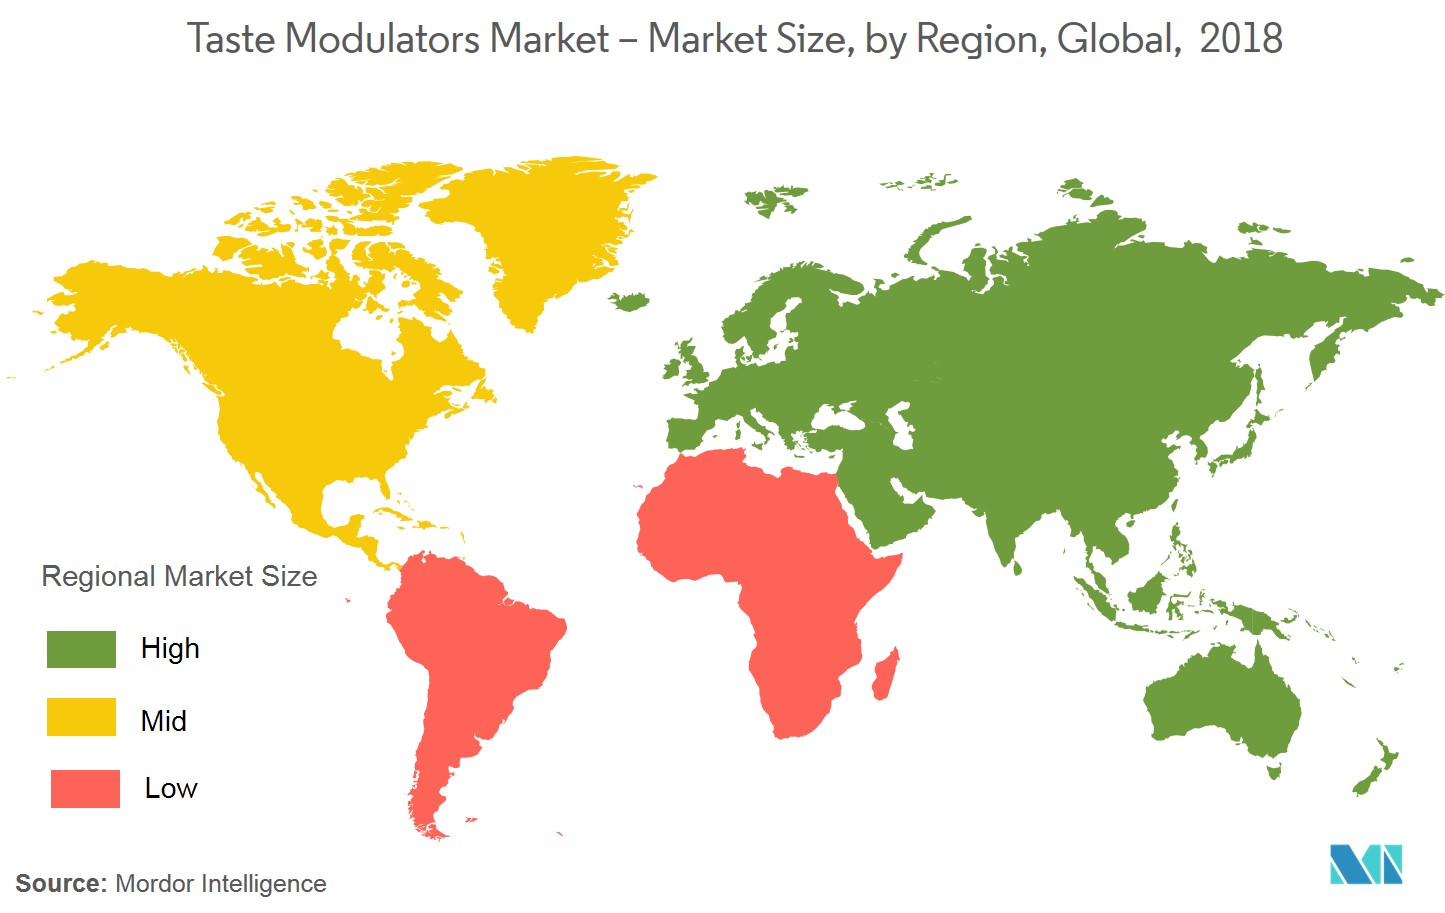 Mercado Moduladores de sabor - Tamanho do mercado, por região, global, 2018